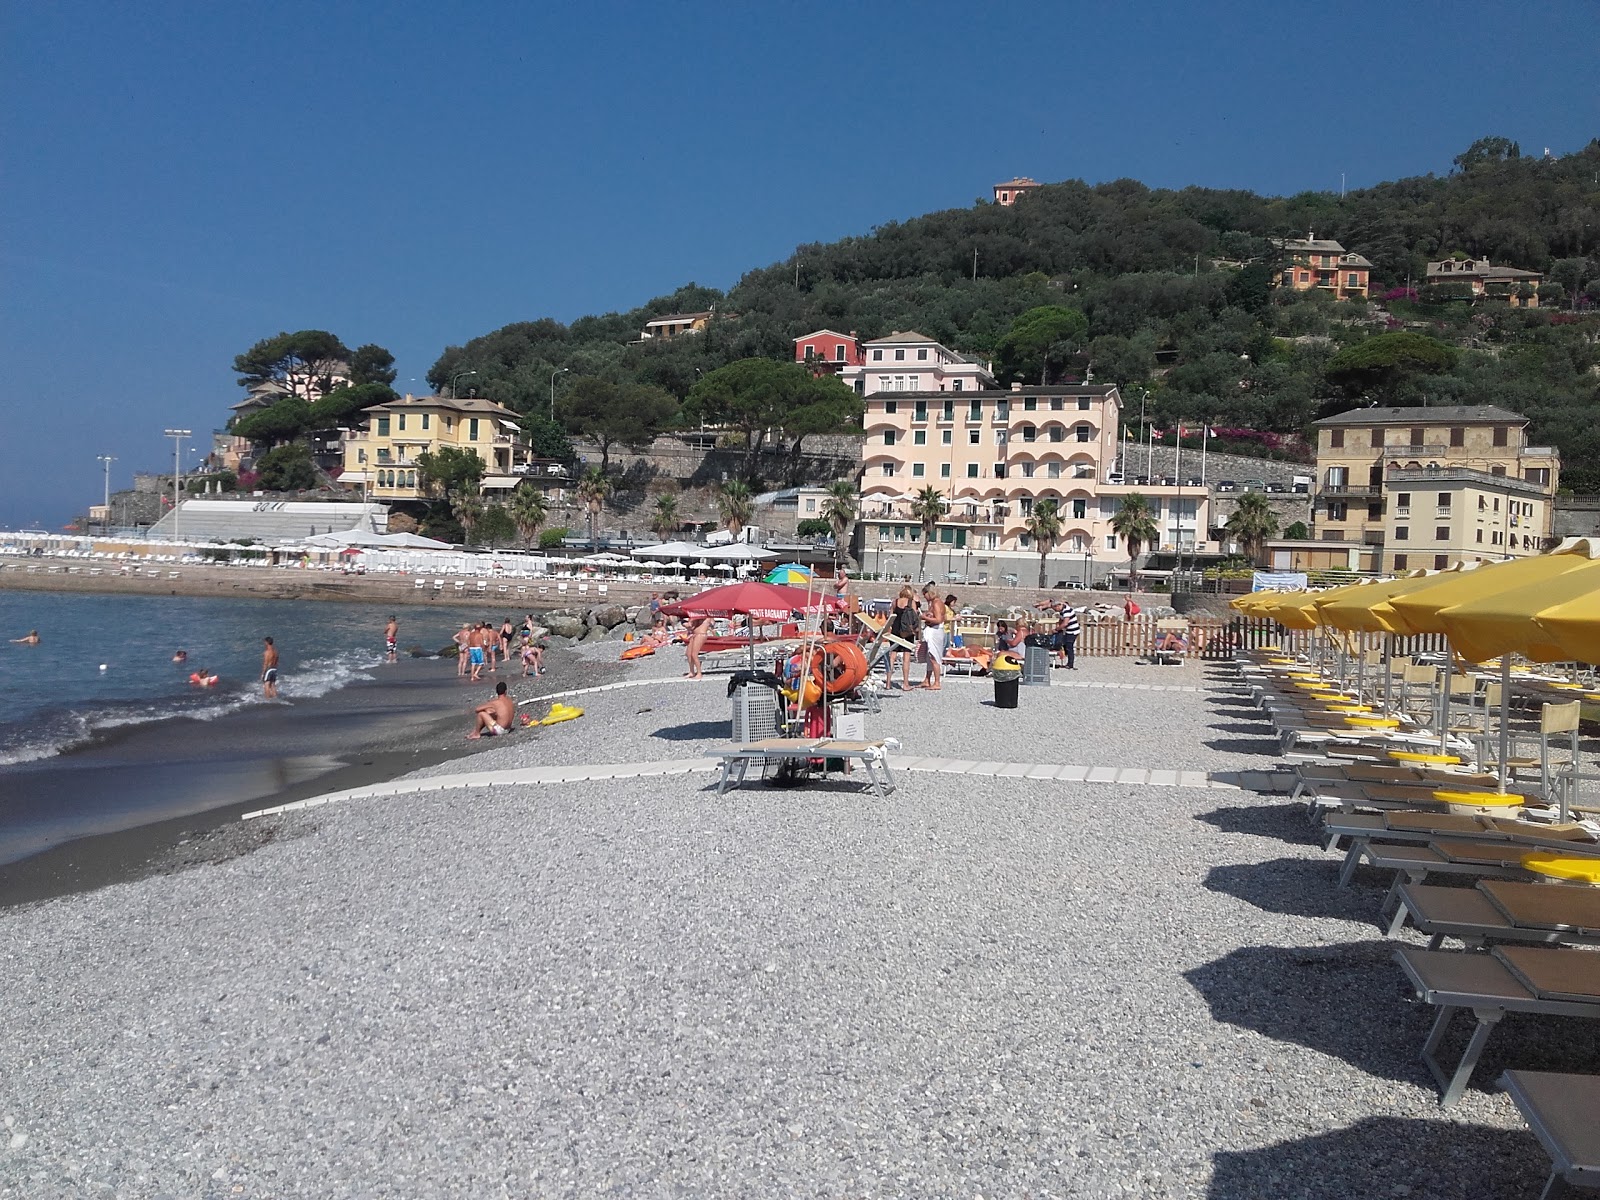 Spiaggia di Recco'in fotoğrafı küçük koy ile birlikte